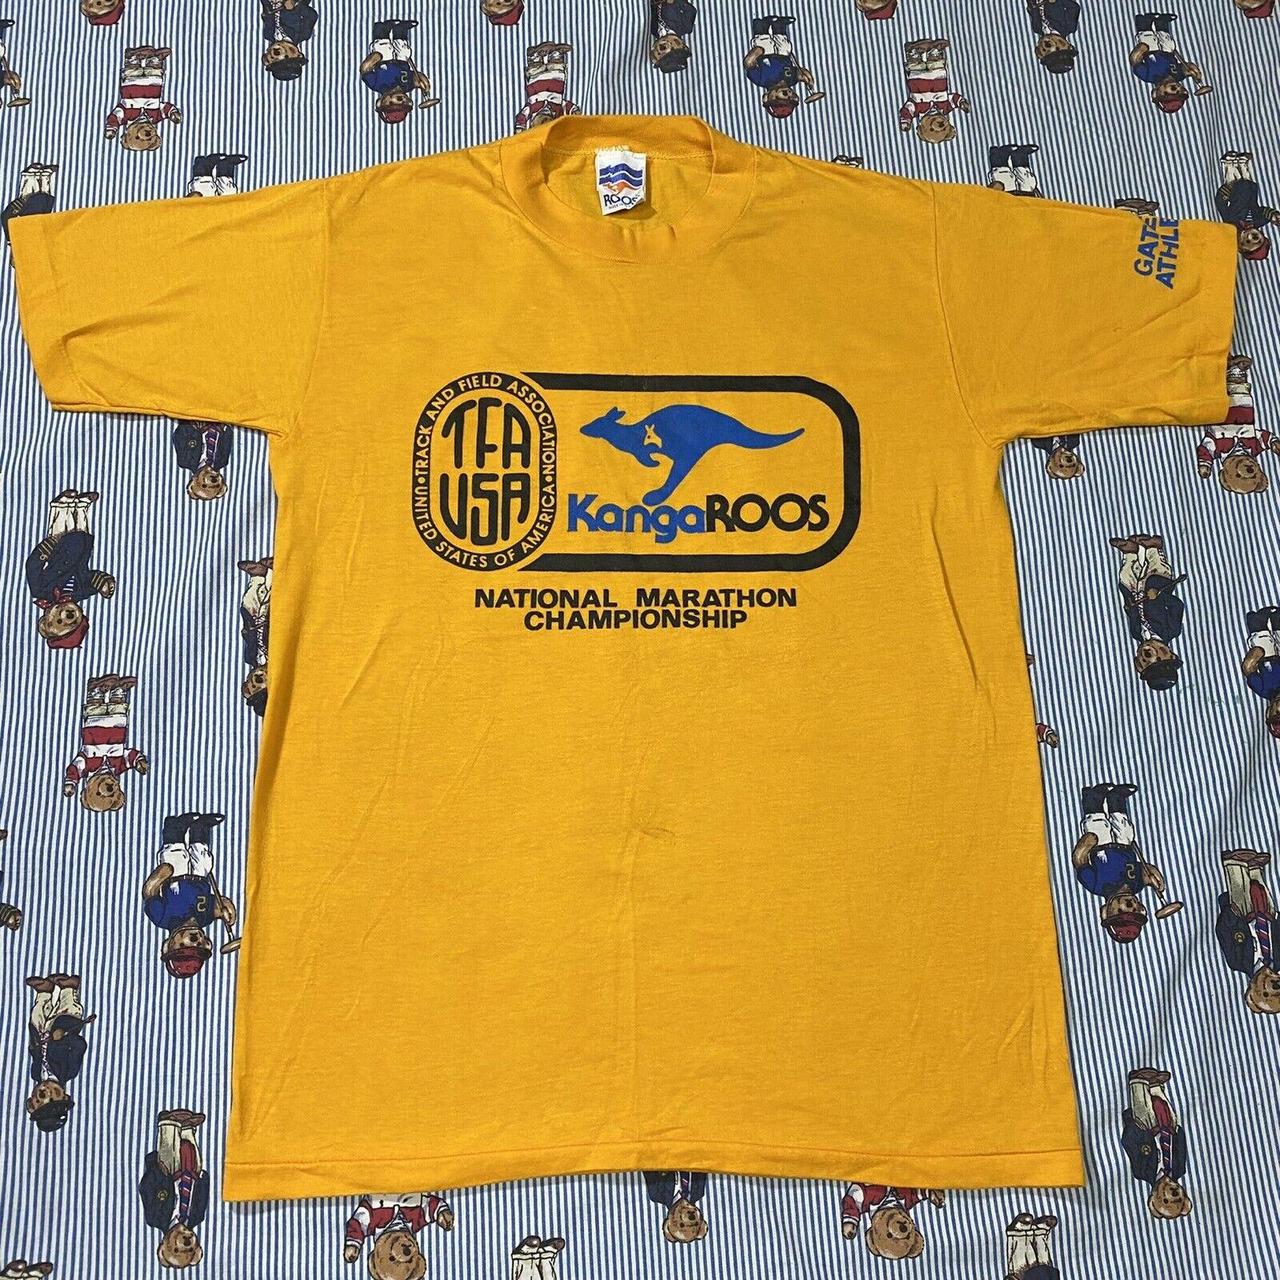 Kangaroo Poo Men's Yellow T-shirt